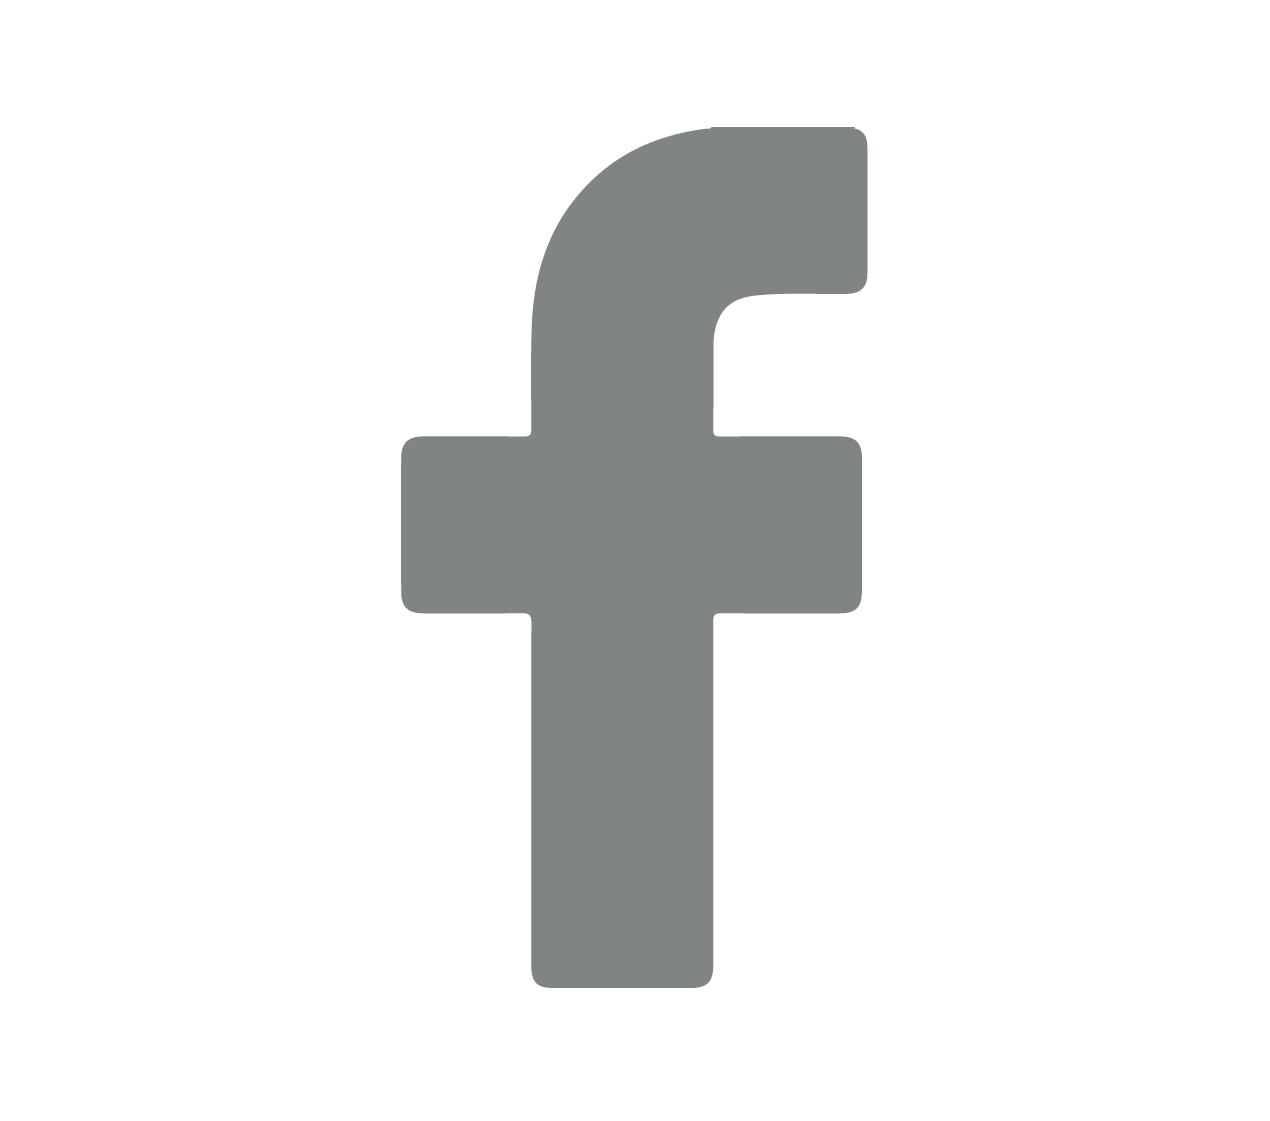 FB_logo_icon_BW-01